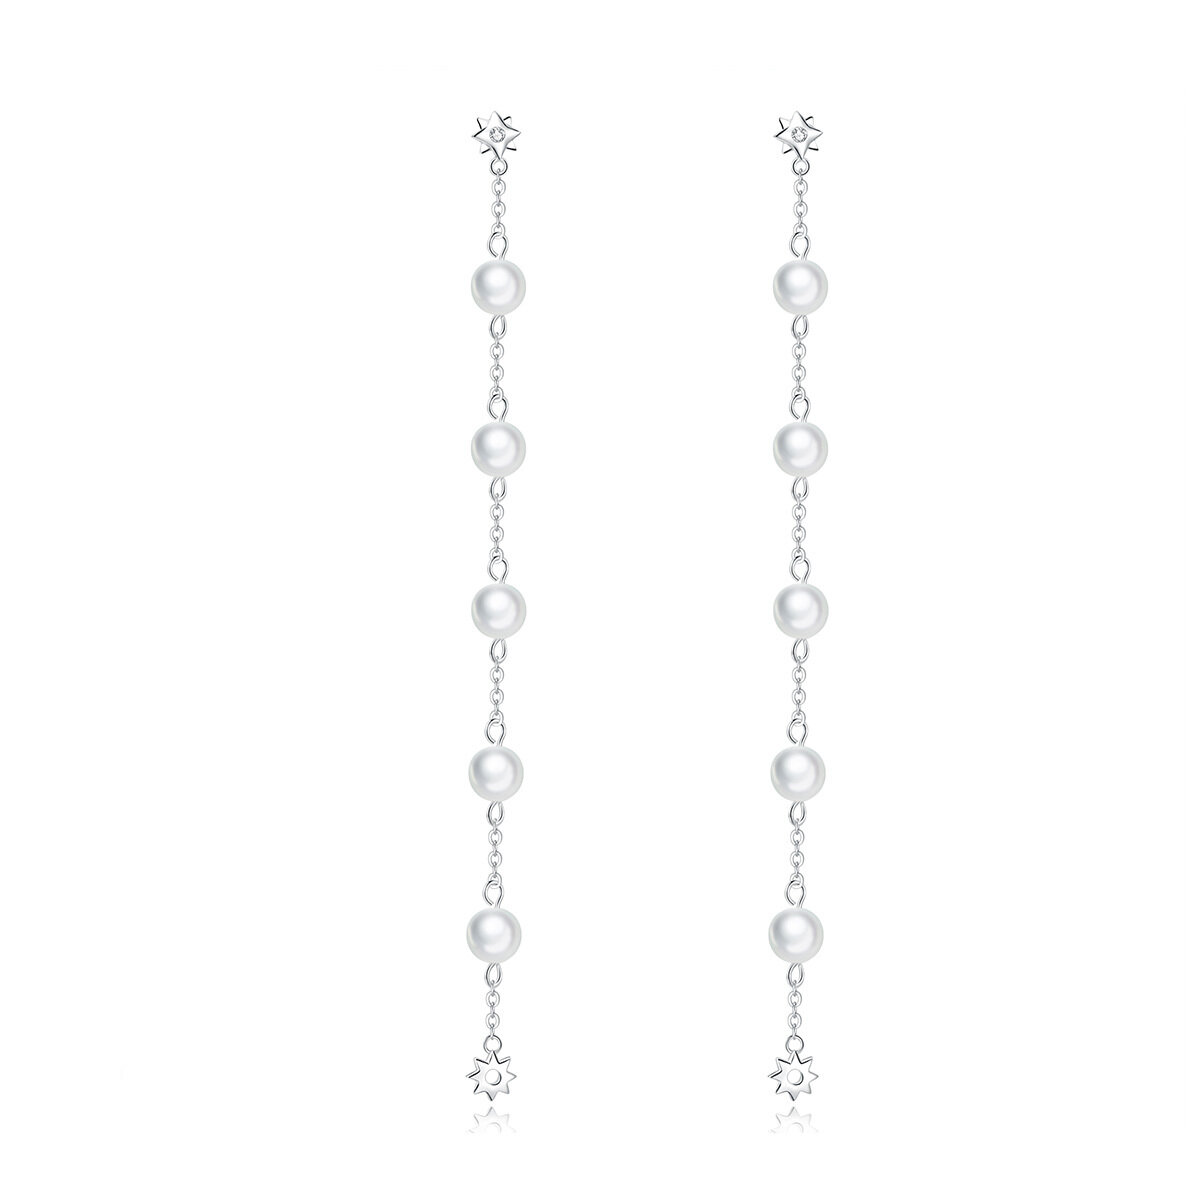 GemKing BSE185 Pearls tassels S925 Sterling Silver Earring